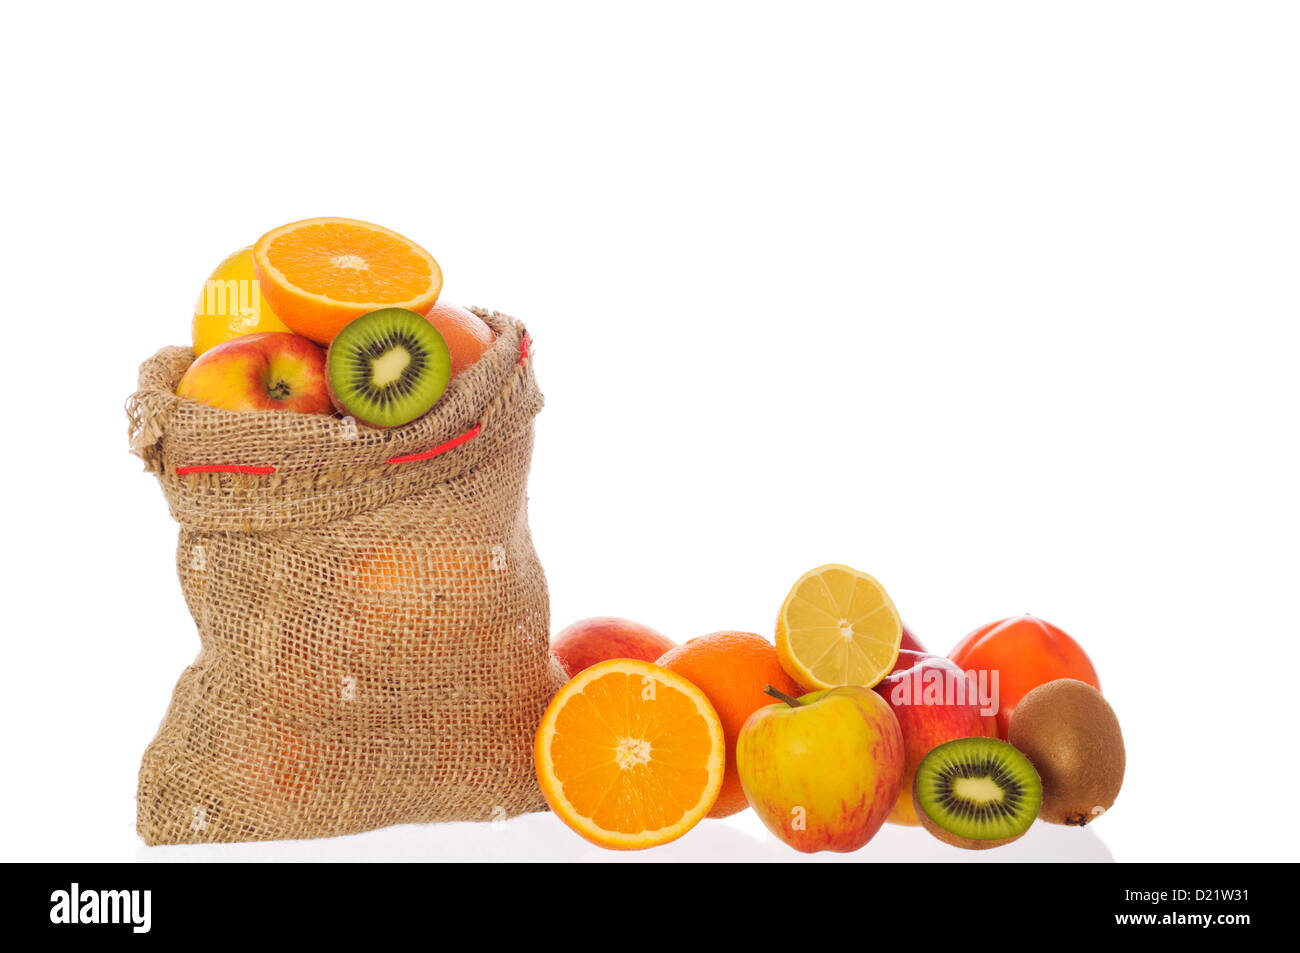 Les vitamines des fruits sains, kiwi, orange, pomme, citron, pamelo, plein de fruits, de la moitié d'un fruit d'une demi-orange kiwi et citron Banque D'Images